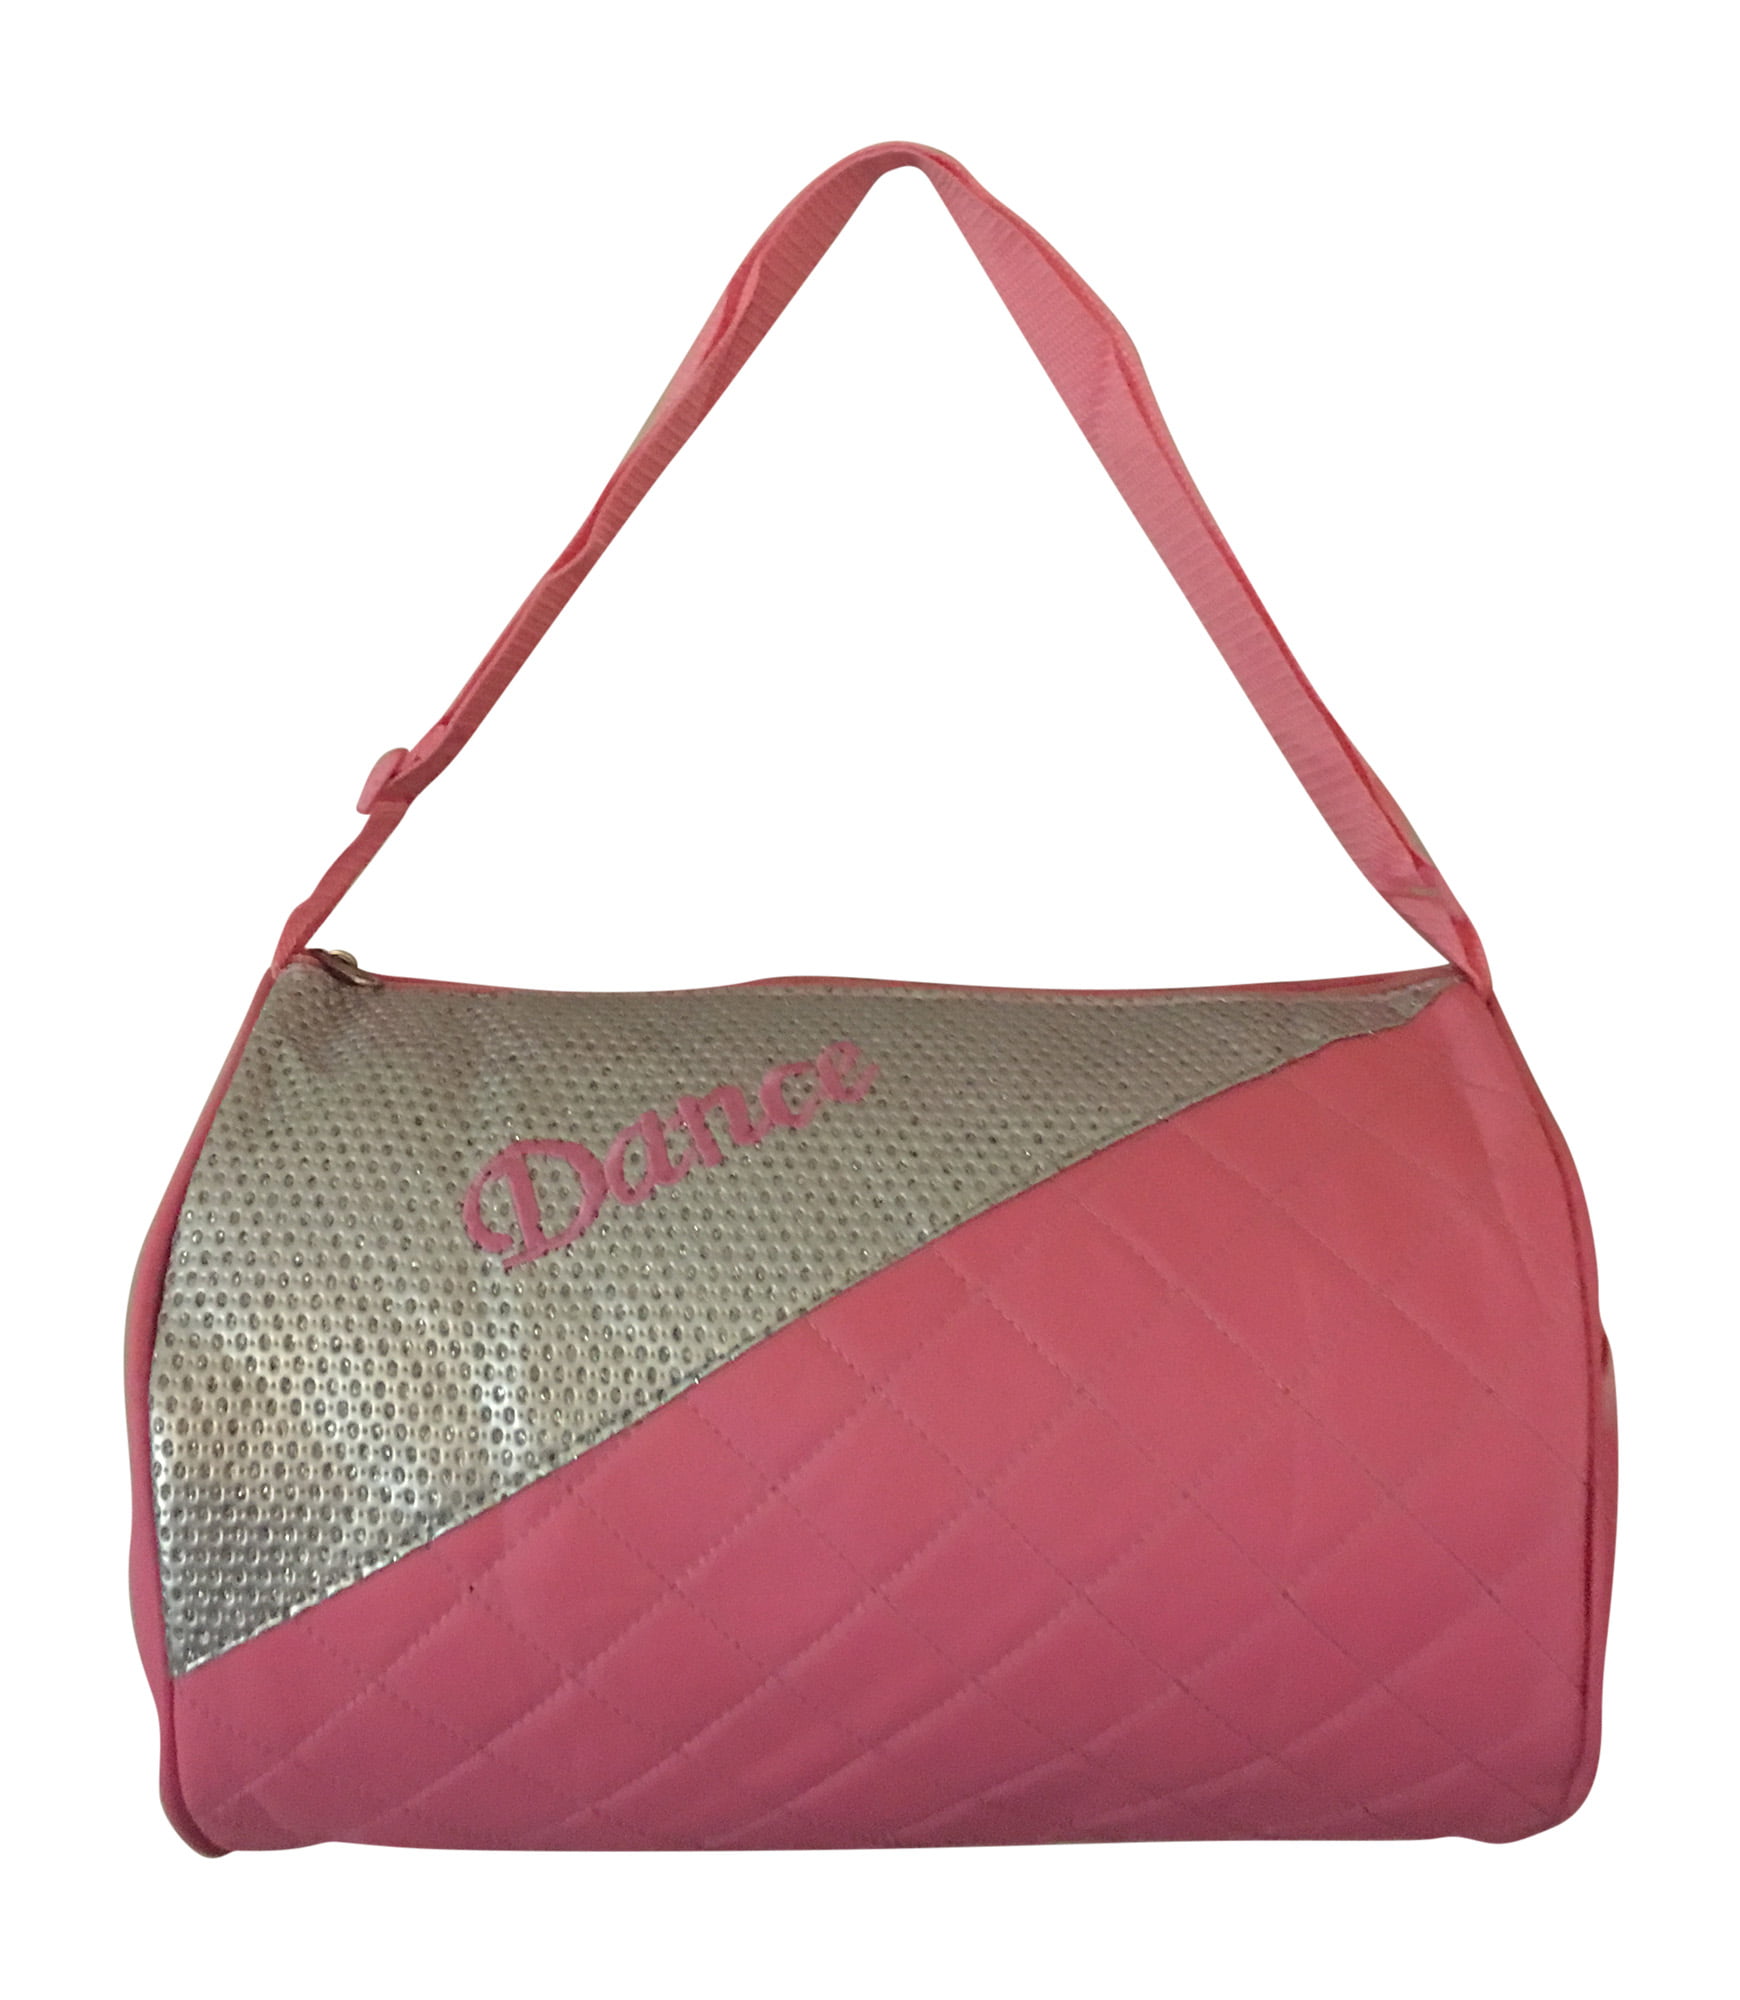 Girls Dance Duffle Bag Pink with Adjustable Shoulder Strap - 0